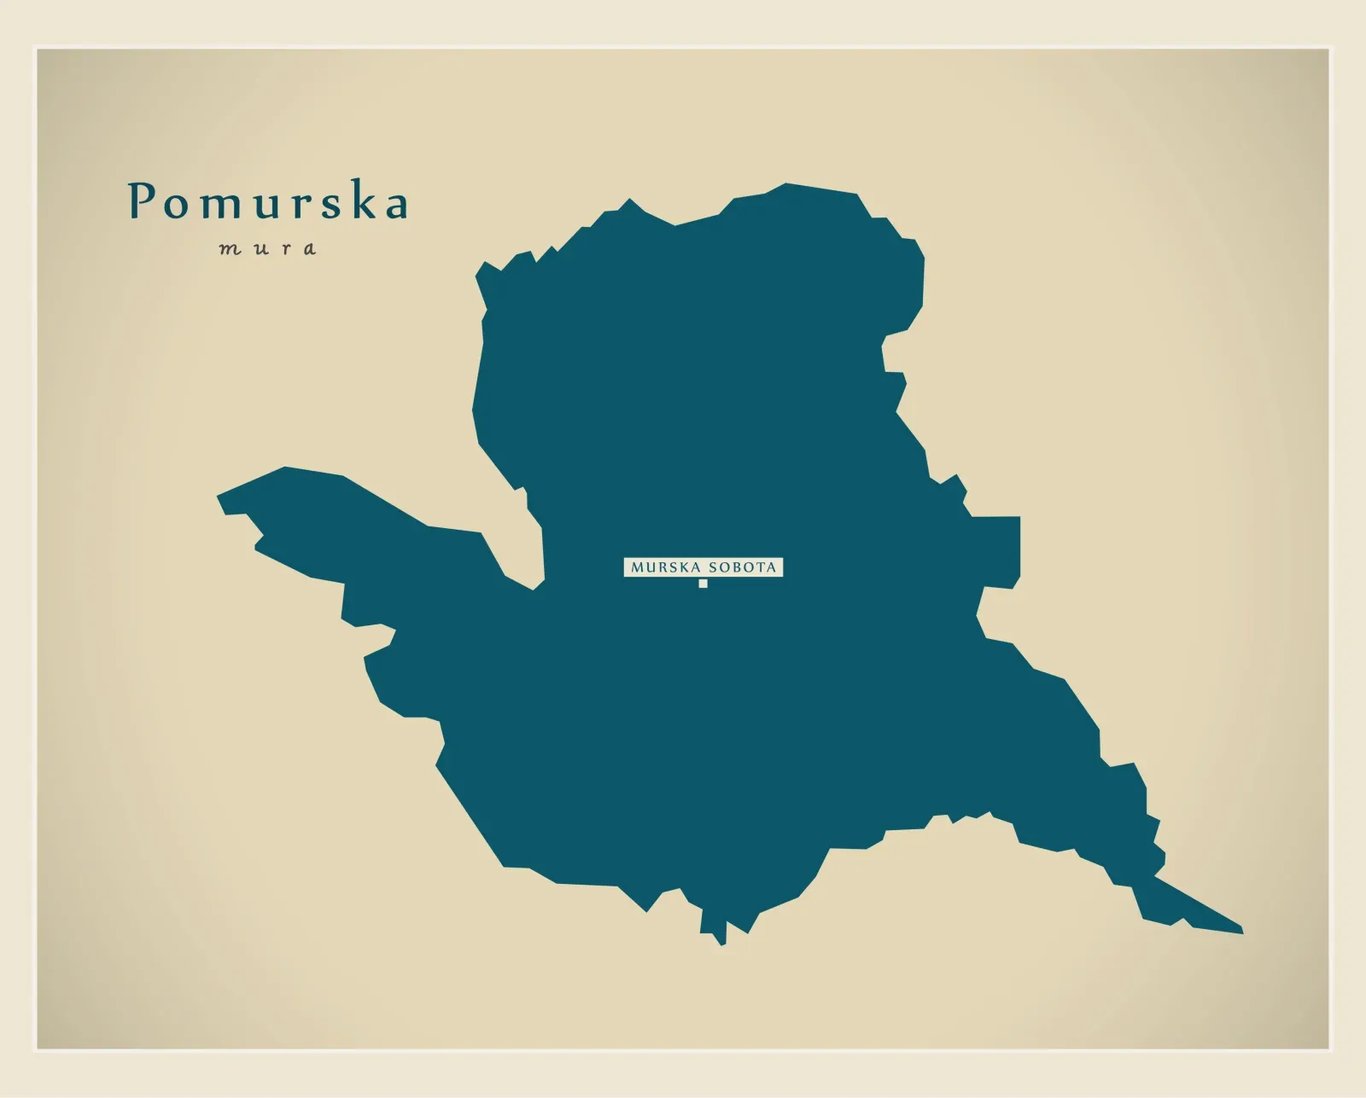 Pomurska régió a Mura mentén - Szlovénia